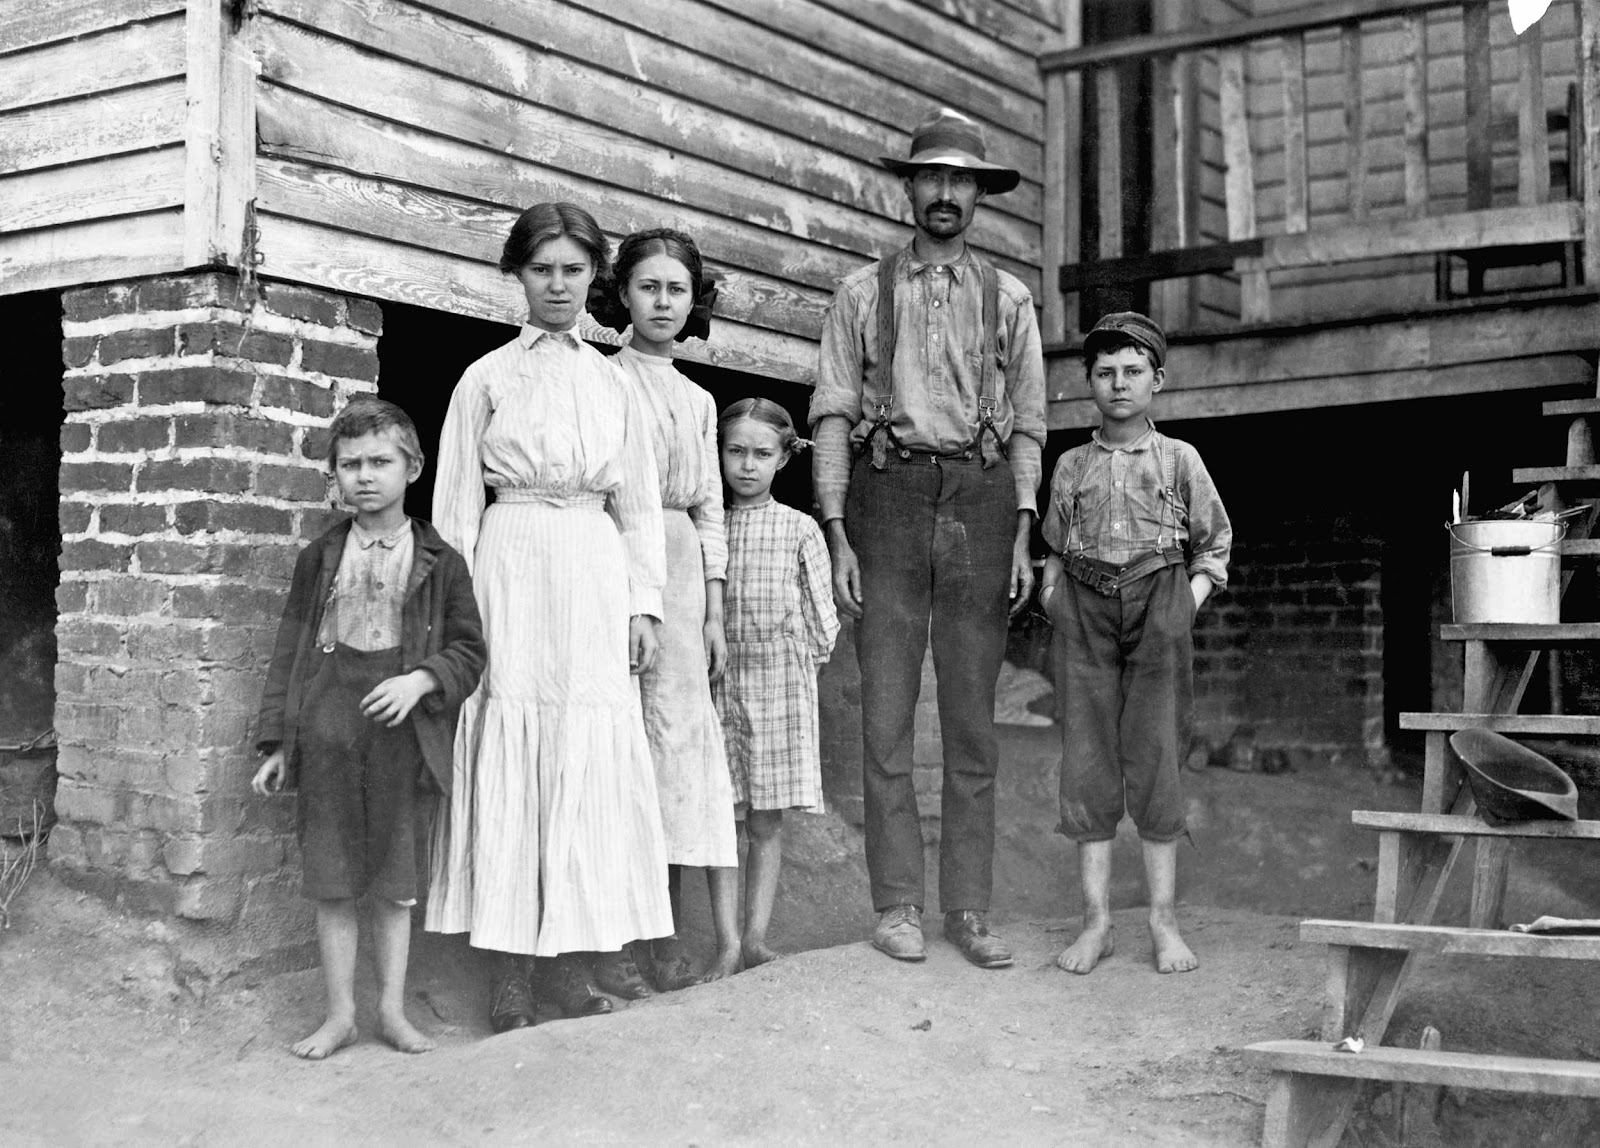 История жизни обычной семьи 41. Фермеры США 19 век. Дети бедняков Англия 19 век. Фермер 19 века в США. Фермер 20 века в США.